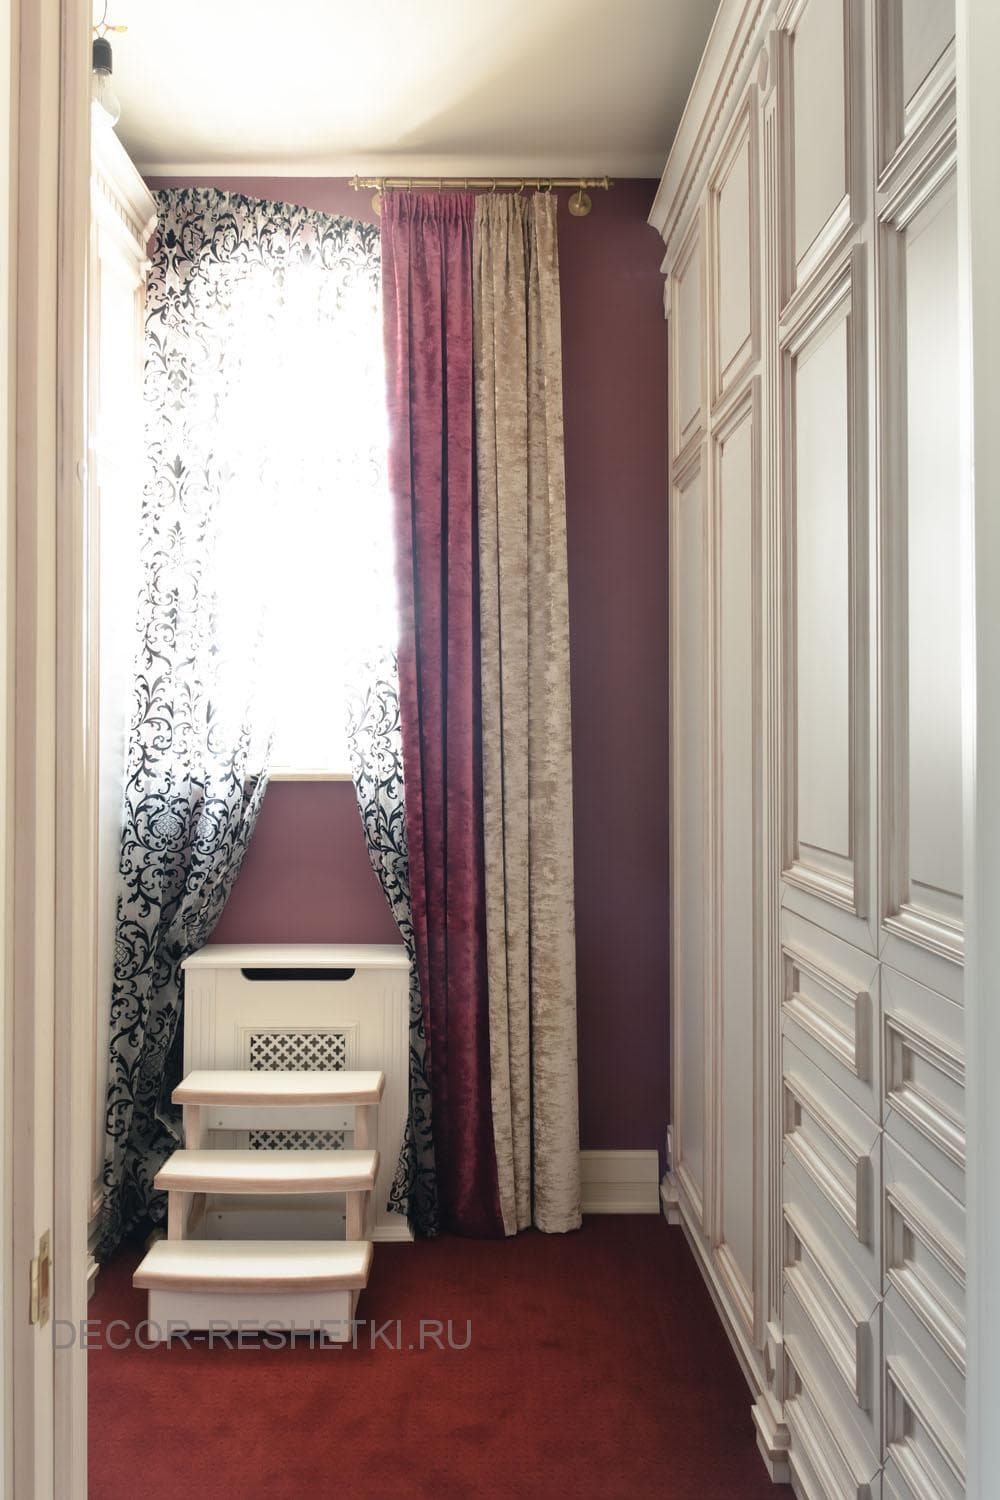 Примеры работ мебели на заказ — фото «Decor-reshetki Мебель Шкафы #10» на странице 1